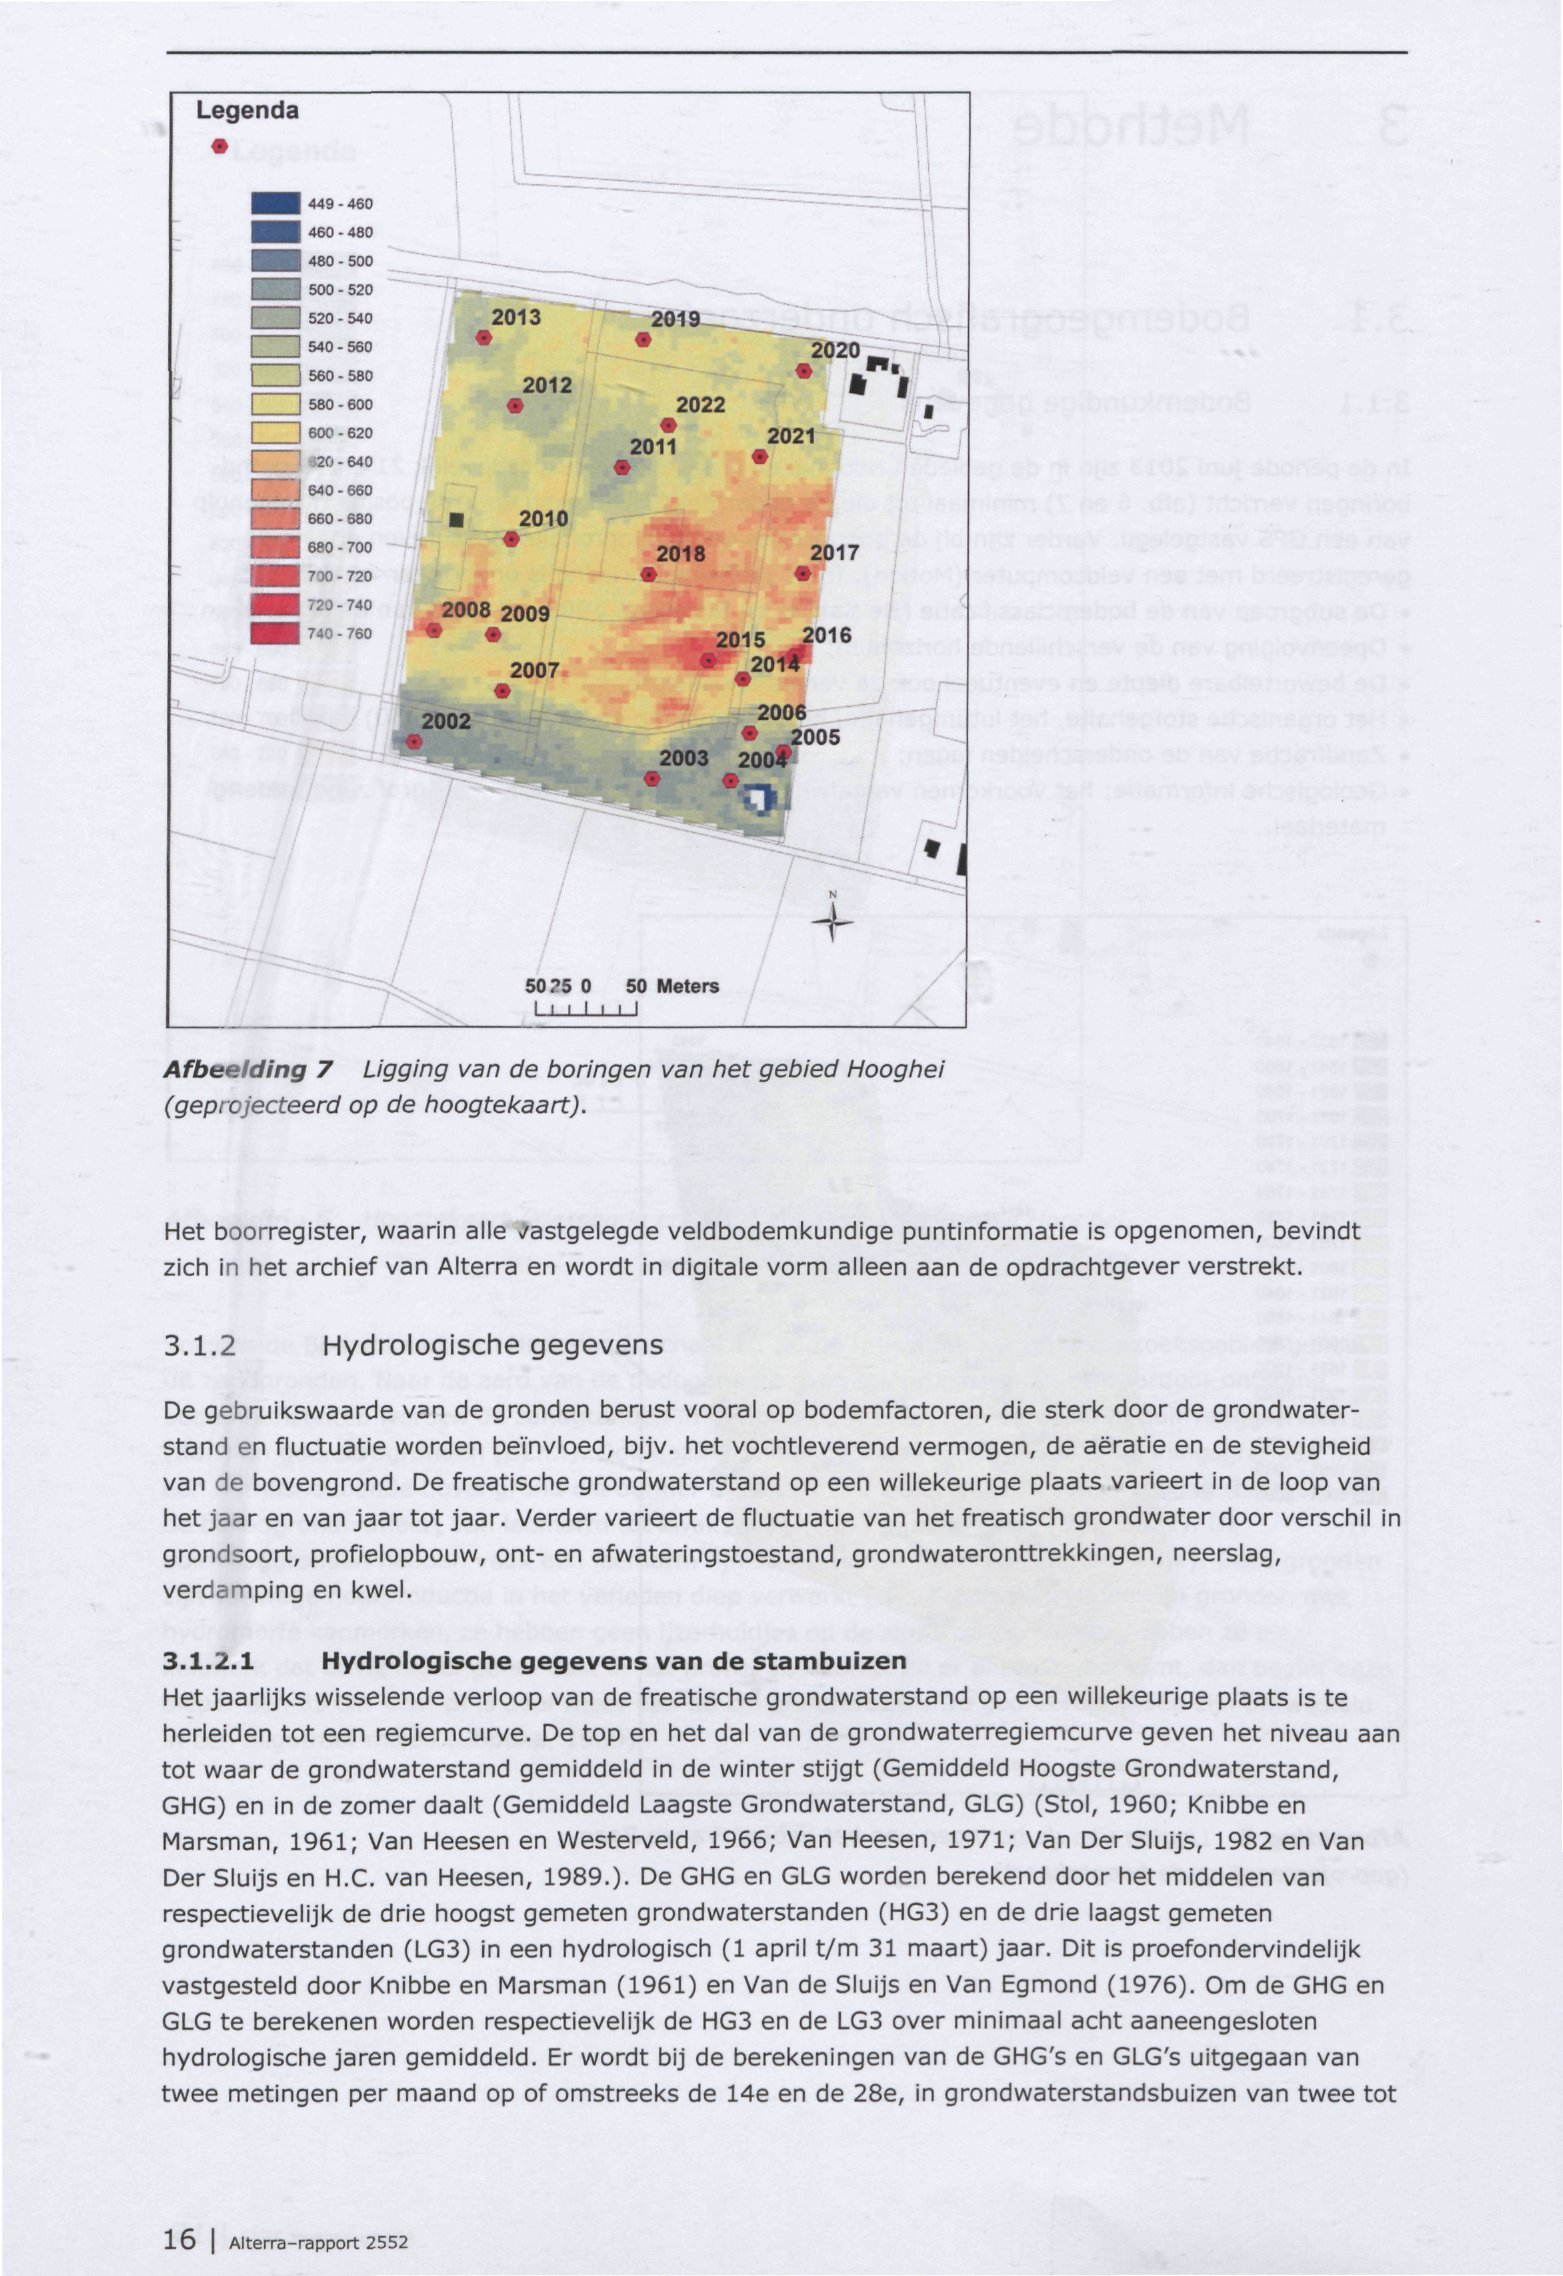 Afbeelding 7 Ligging van de boringen van het gebied Hooghei (geprojecteerd op de hoogtekaart).